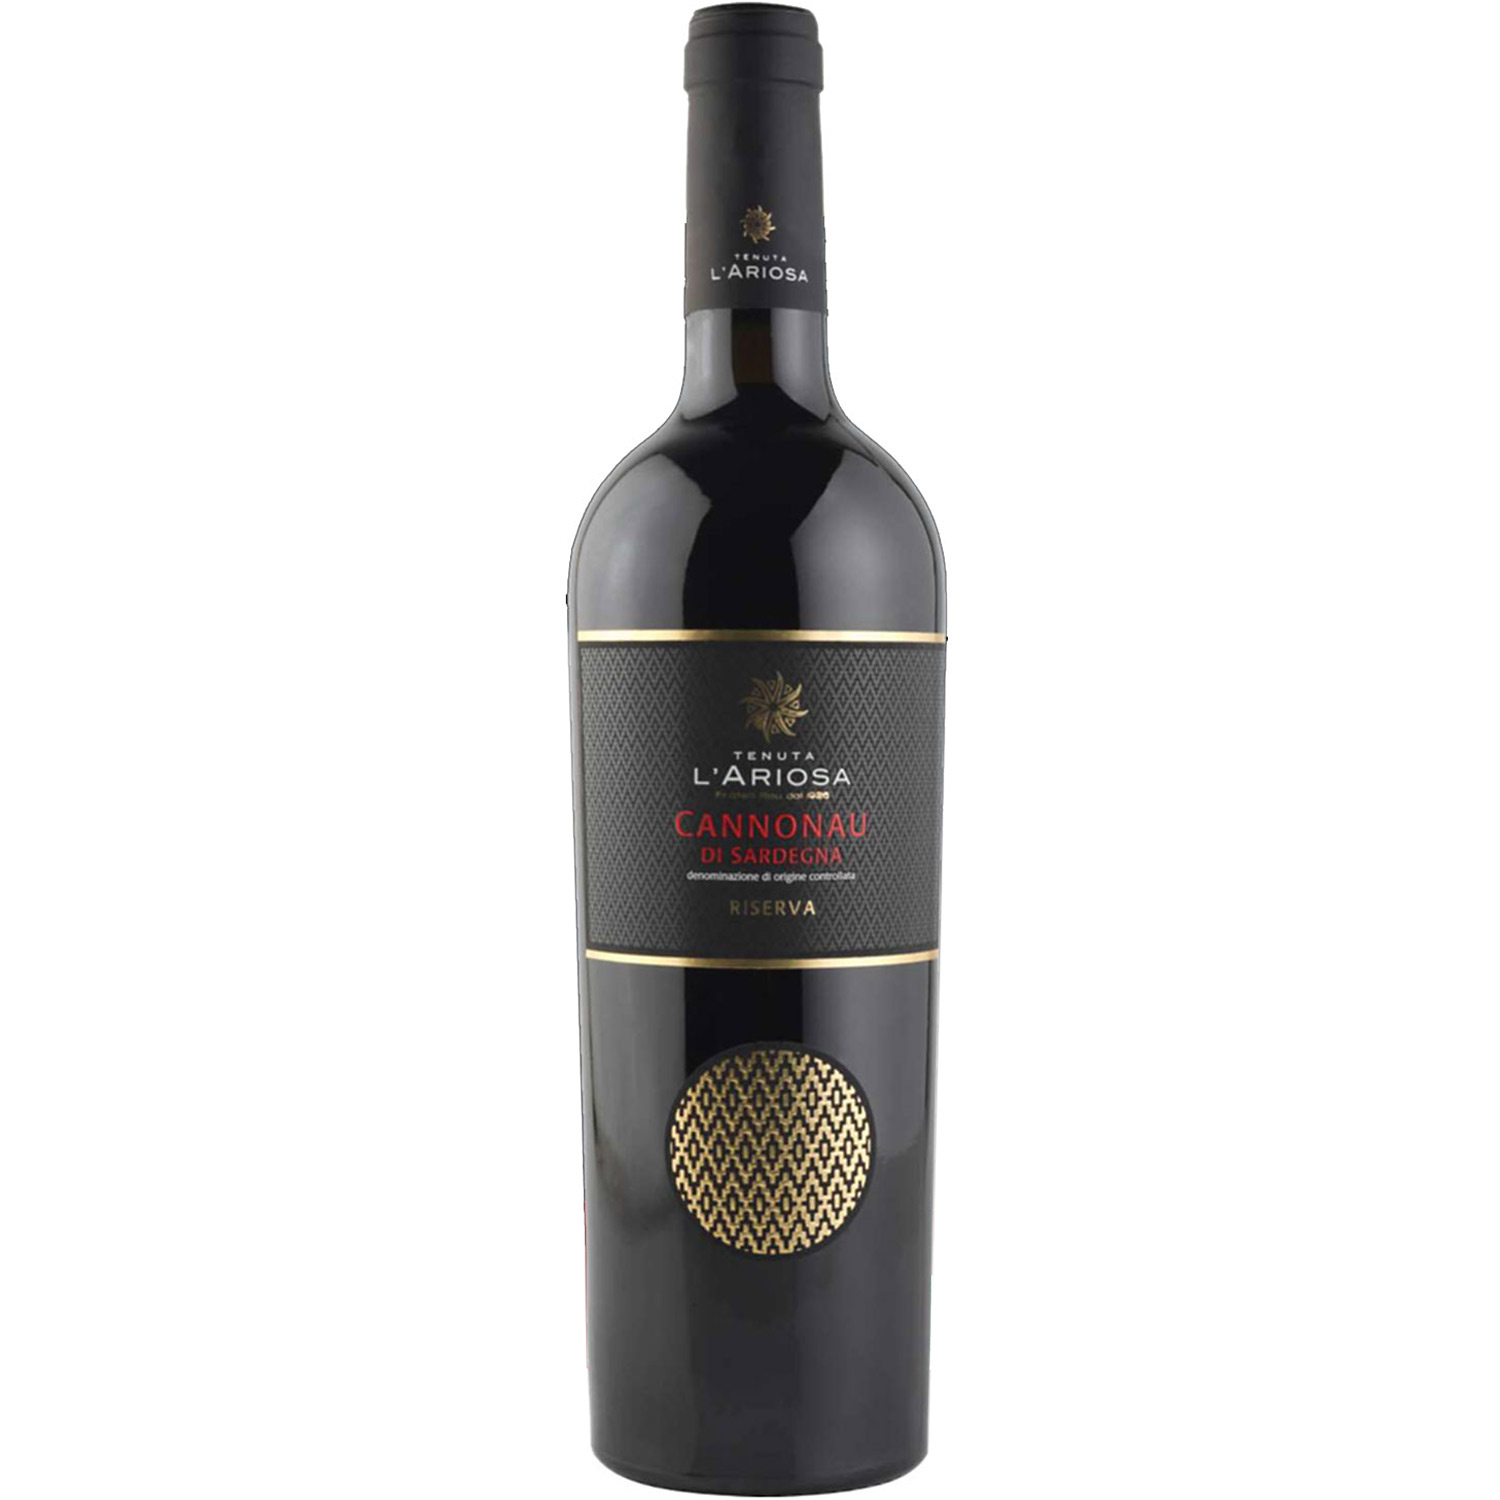 Italienischer Rotwein Tenuta l'Ariosa Cannonau di Sardegna Riserva 2017